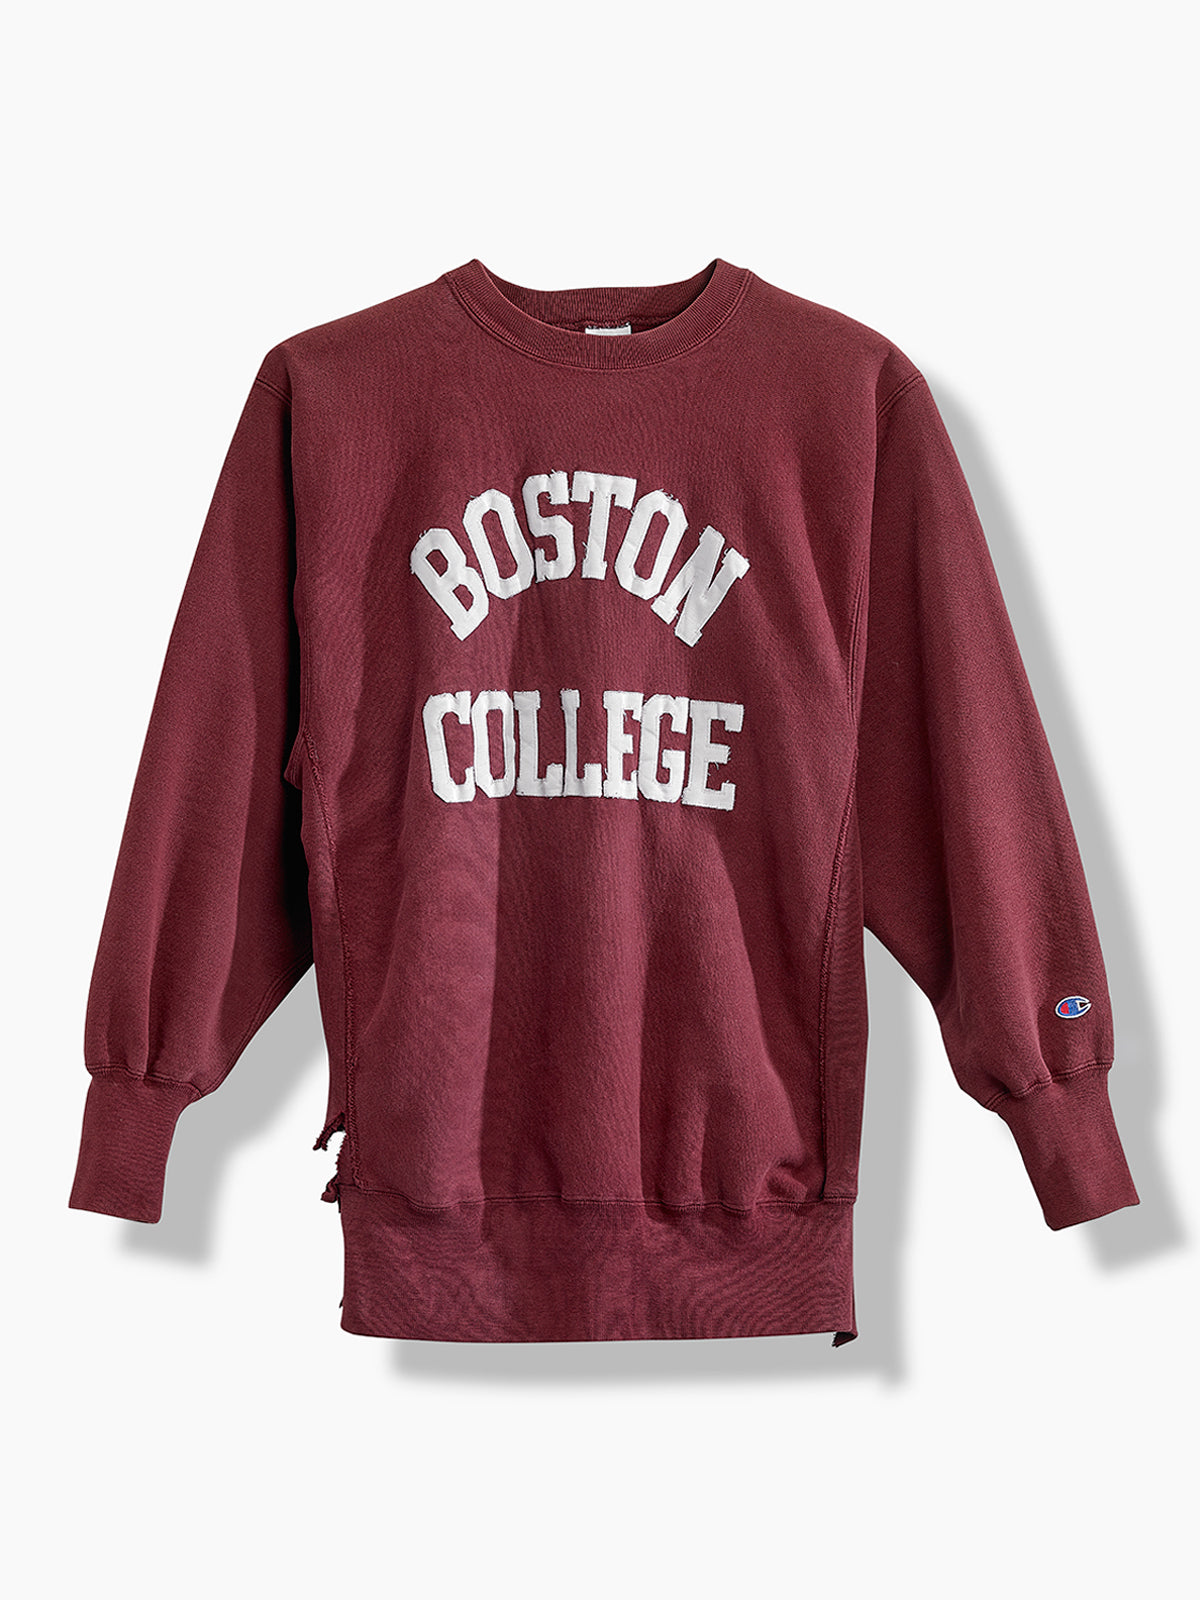 vintage champion college sweatshirt